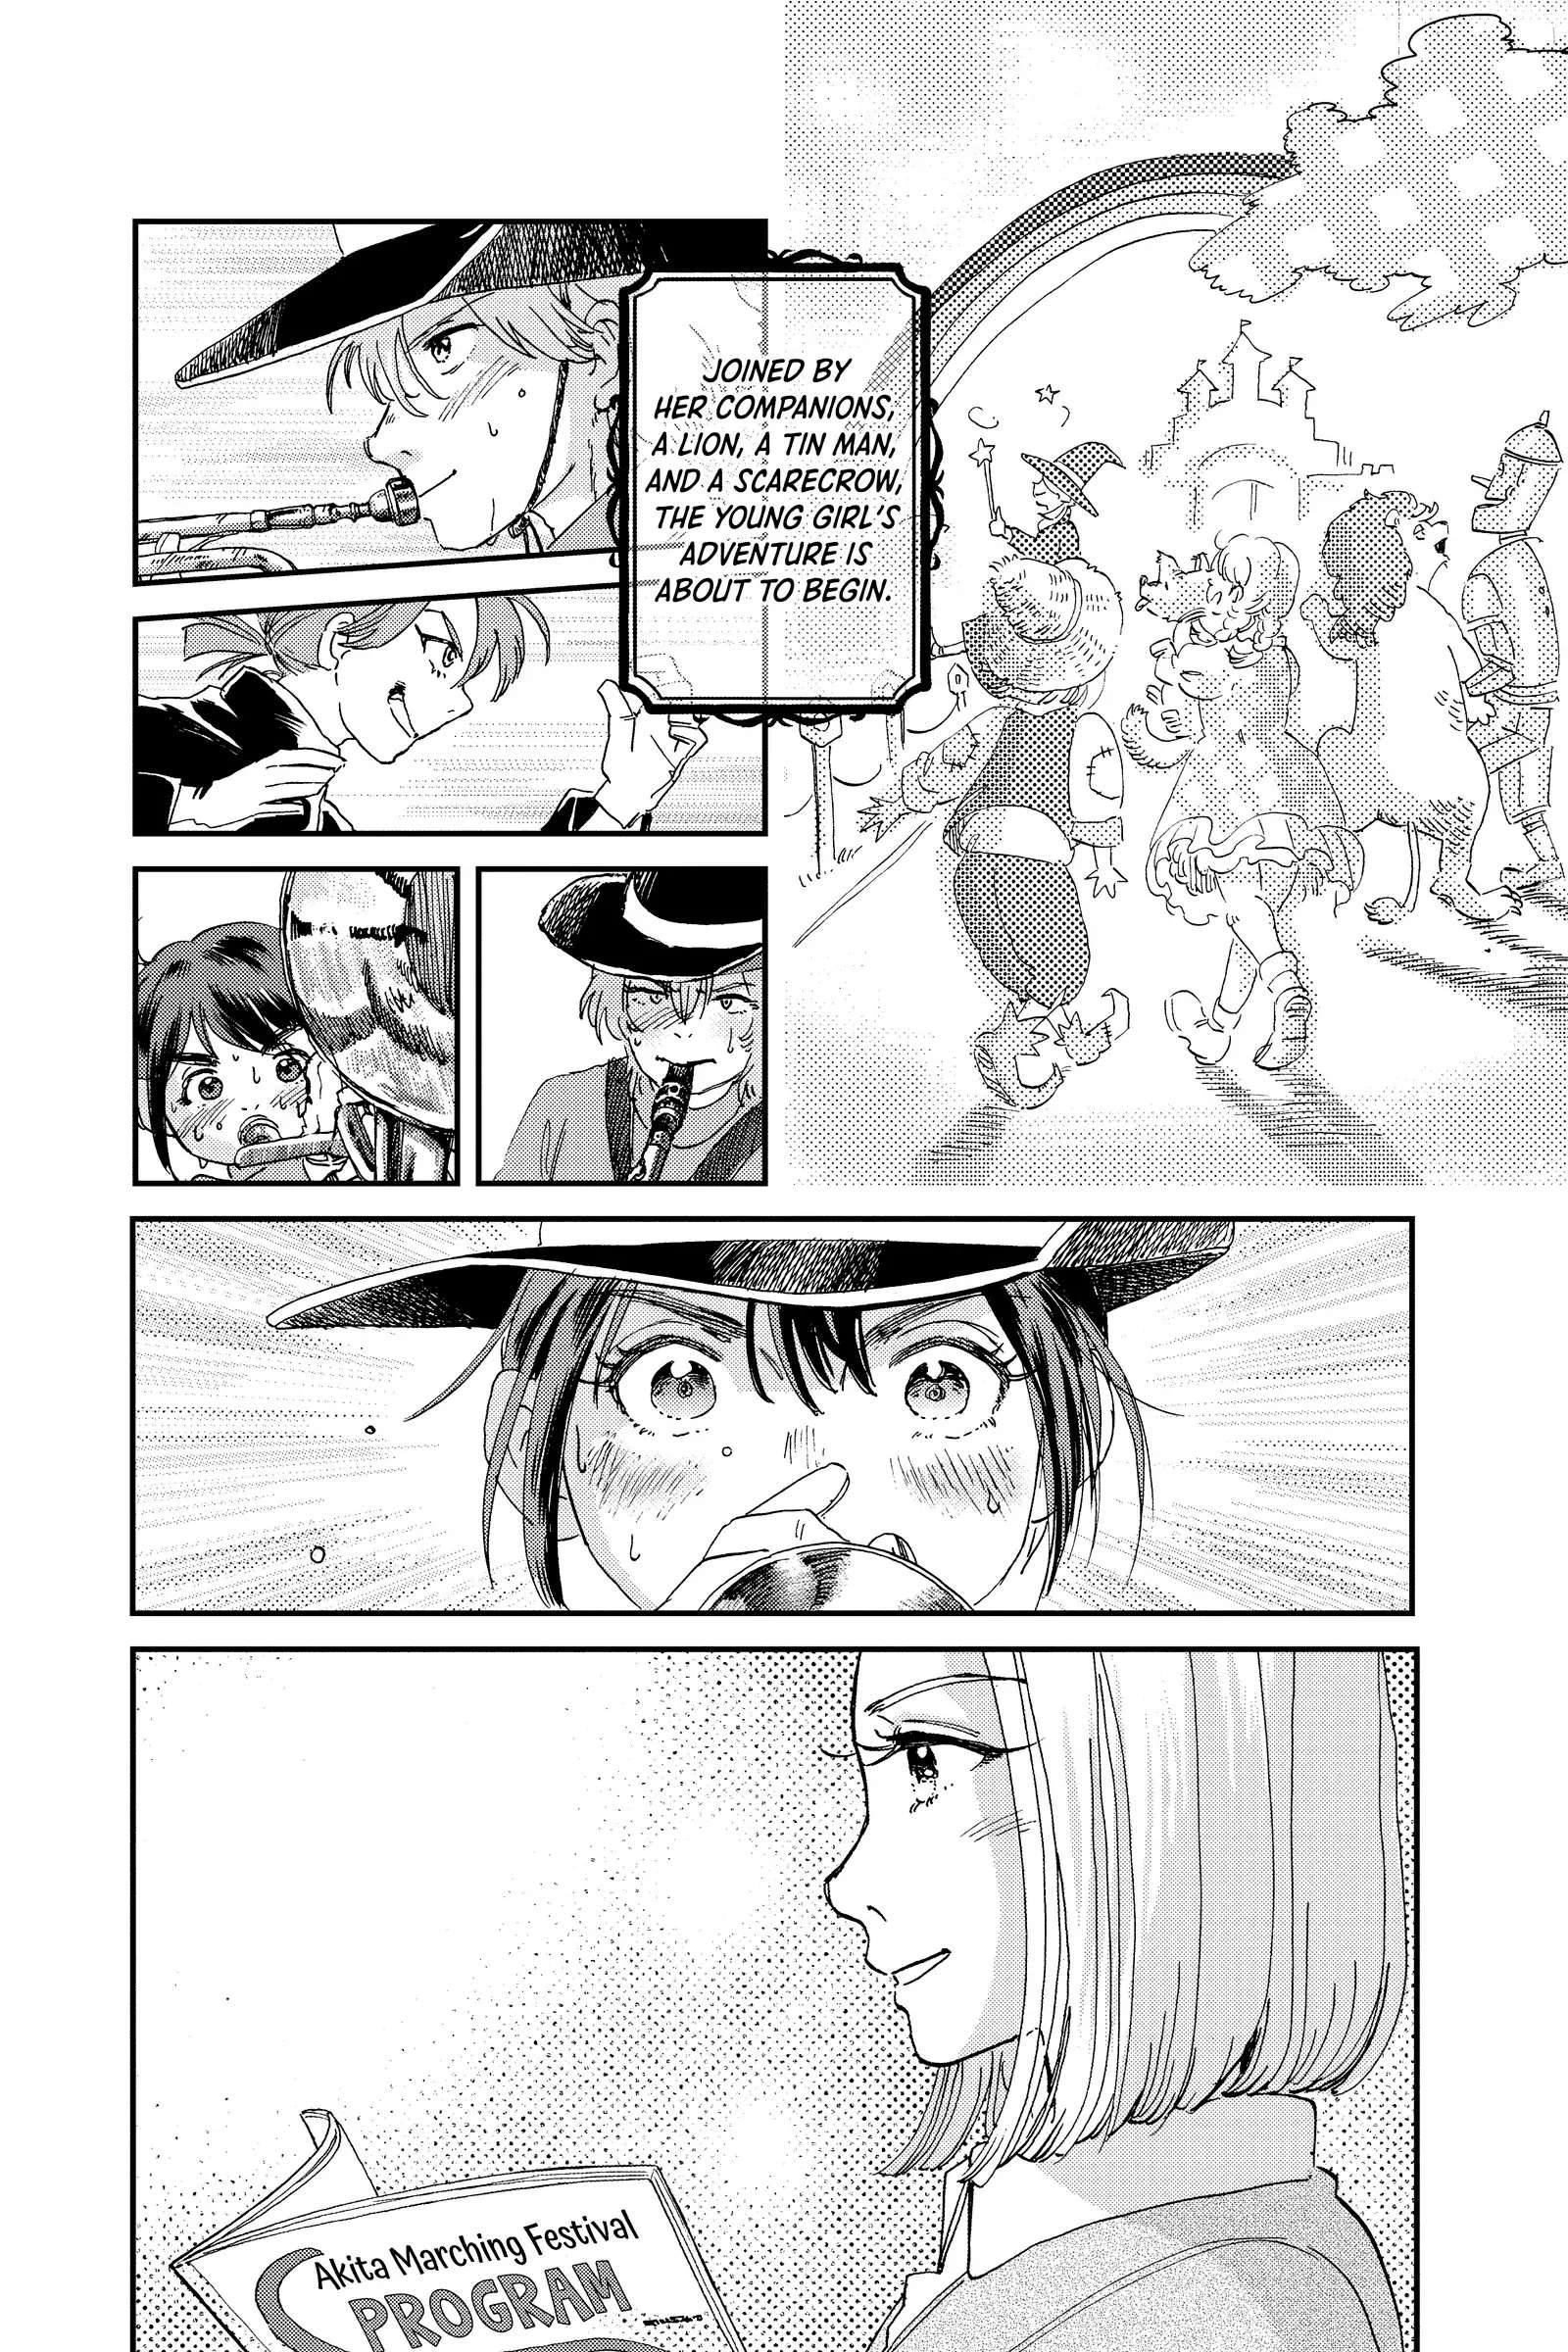 Mikazuki March - chapter 9 - #3